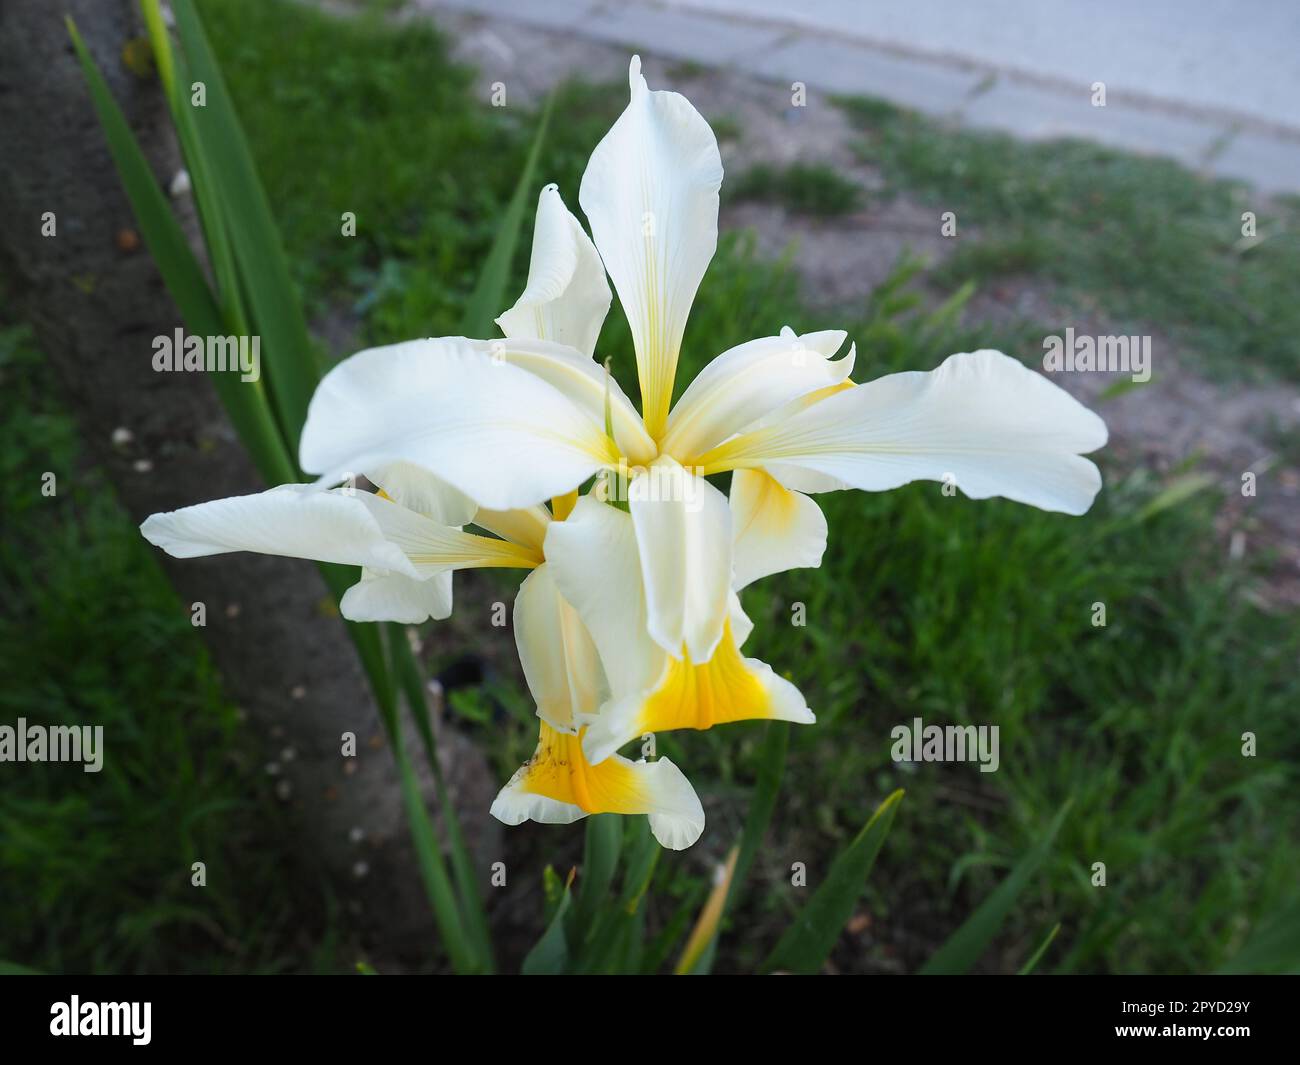 Iris est un genre de rhizomes vivaces de la famille des Iris. Une herbe ornementale avec de grandes fleurs lumineuses. Fleur délicate gracieuse de couleur blanche avec des veines jaunes. Feuilles vertes en arrière-plan Banque D'Images